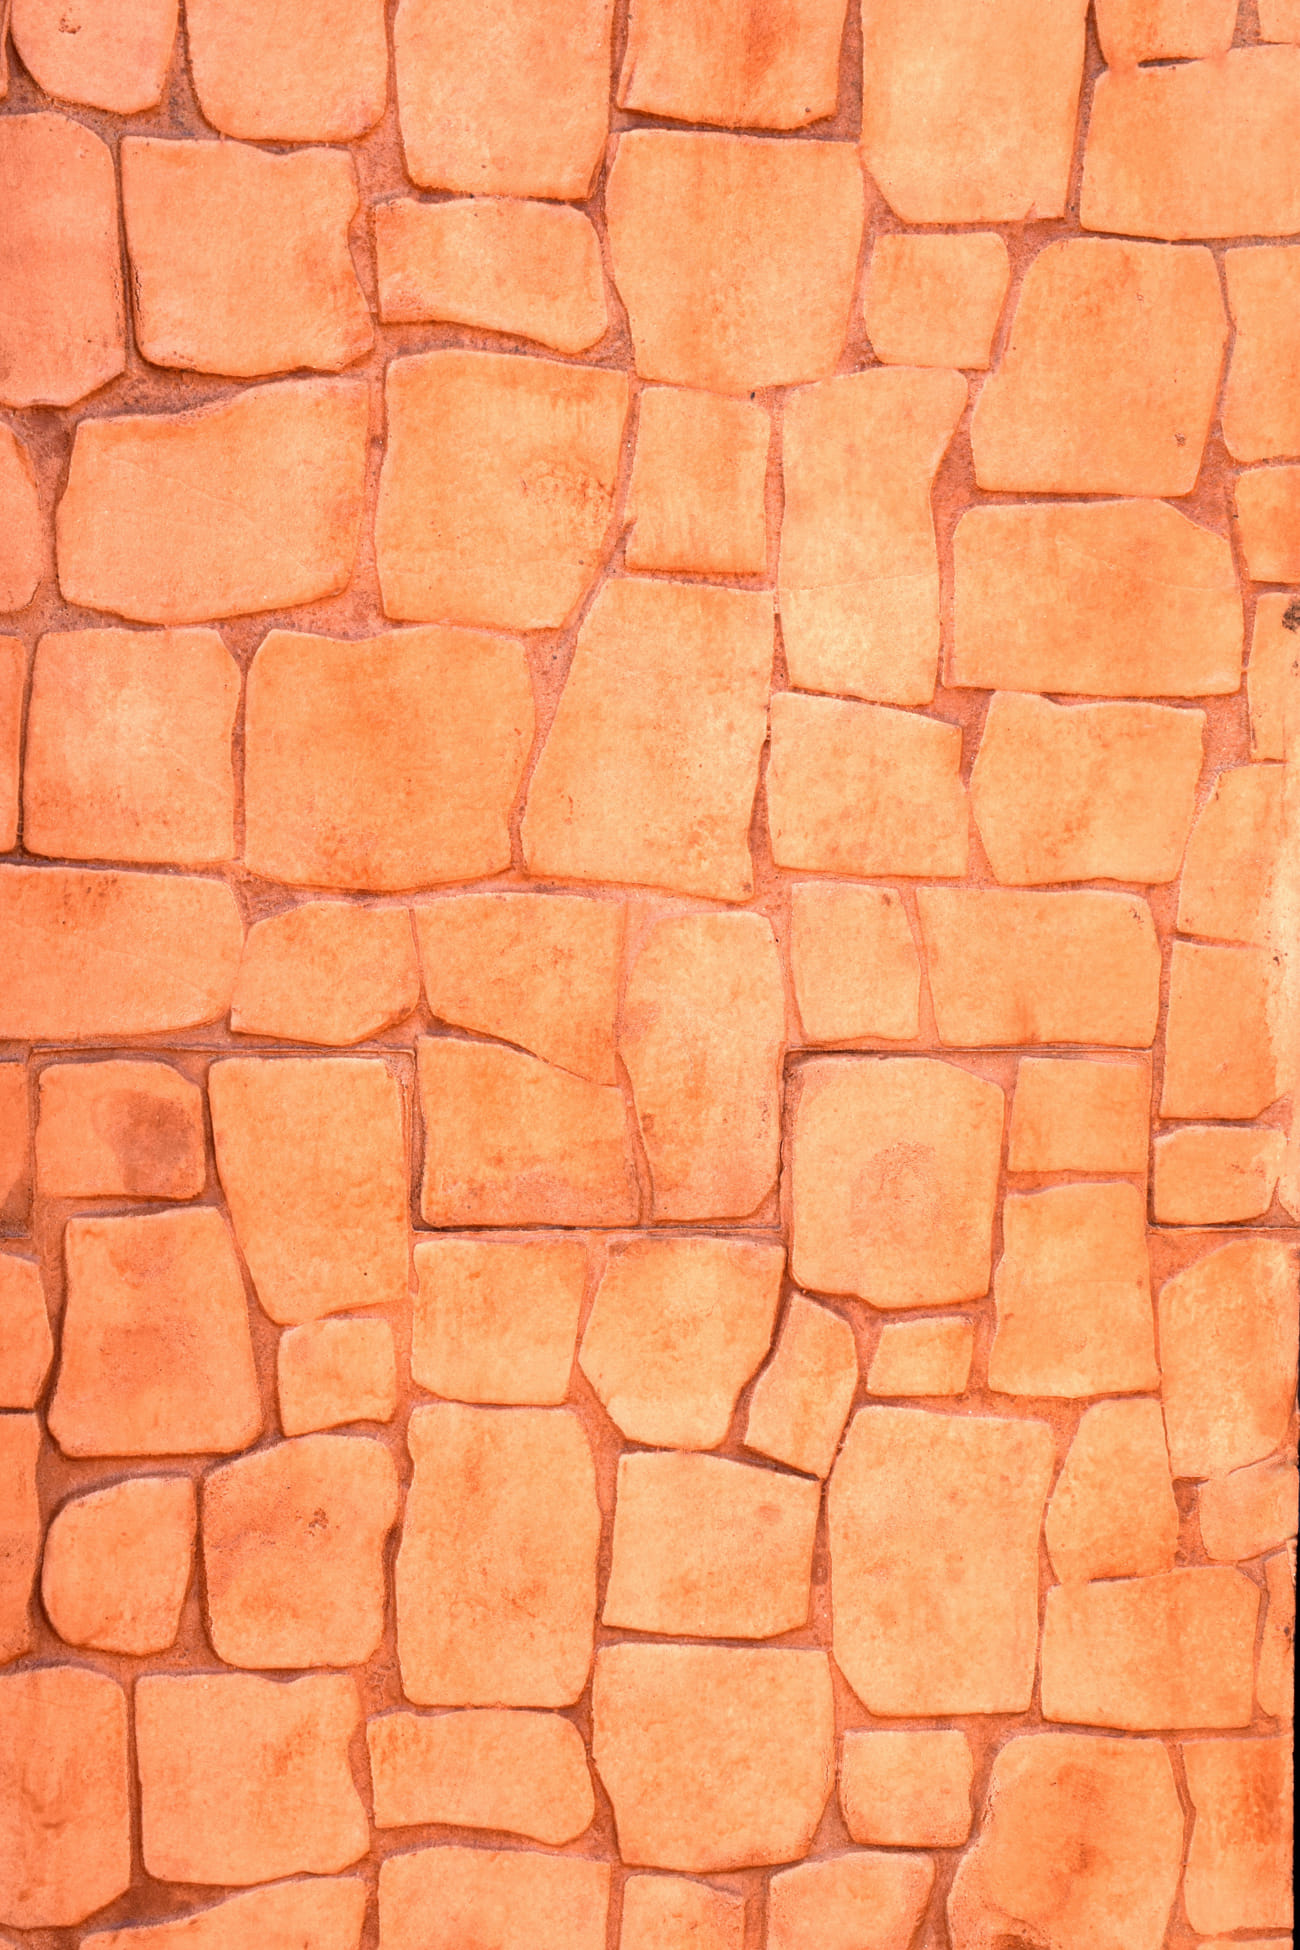 Dikey baskılı beton taş efekti turuncu renk